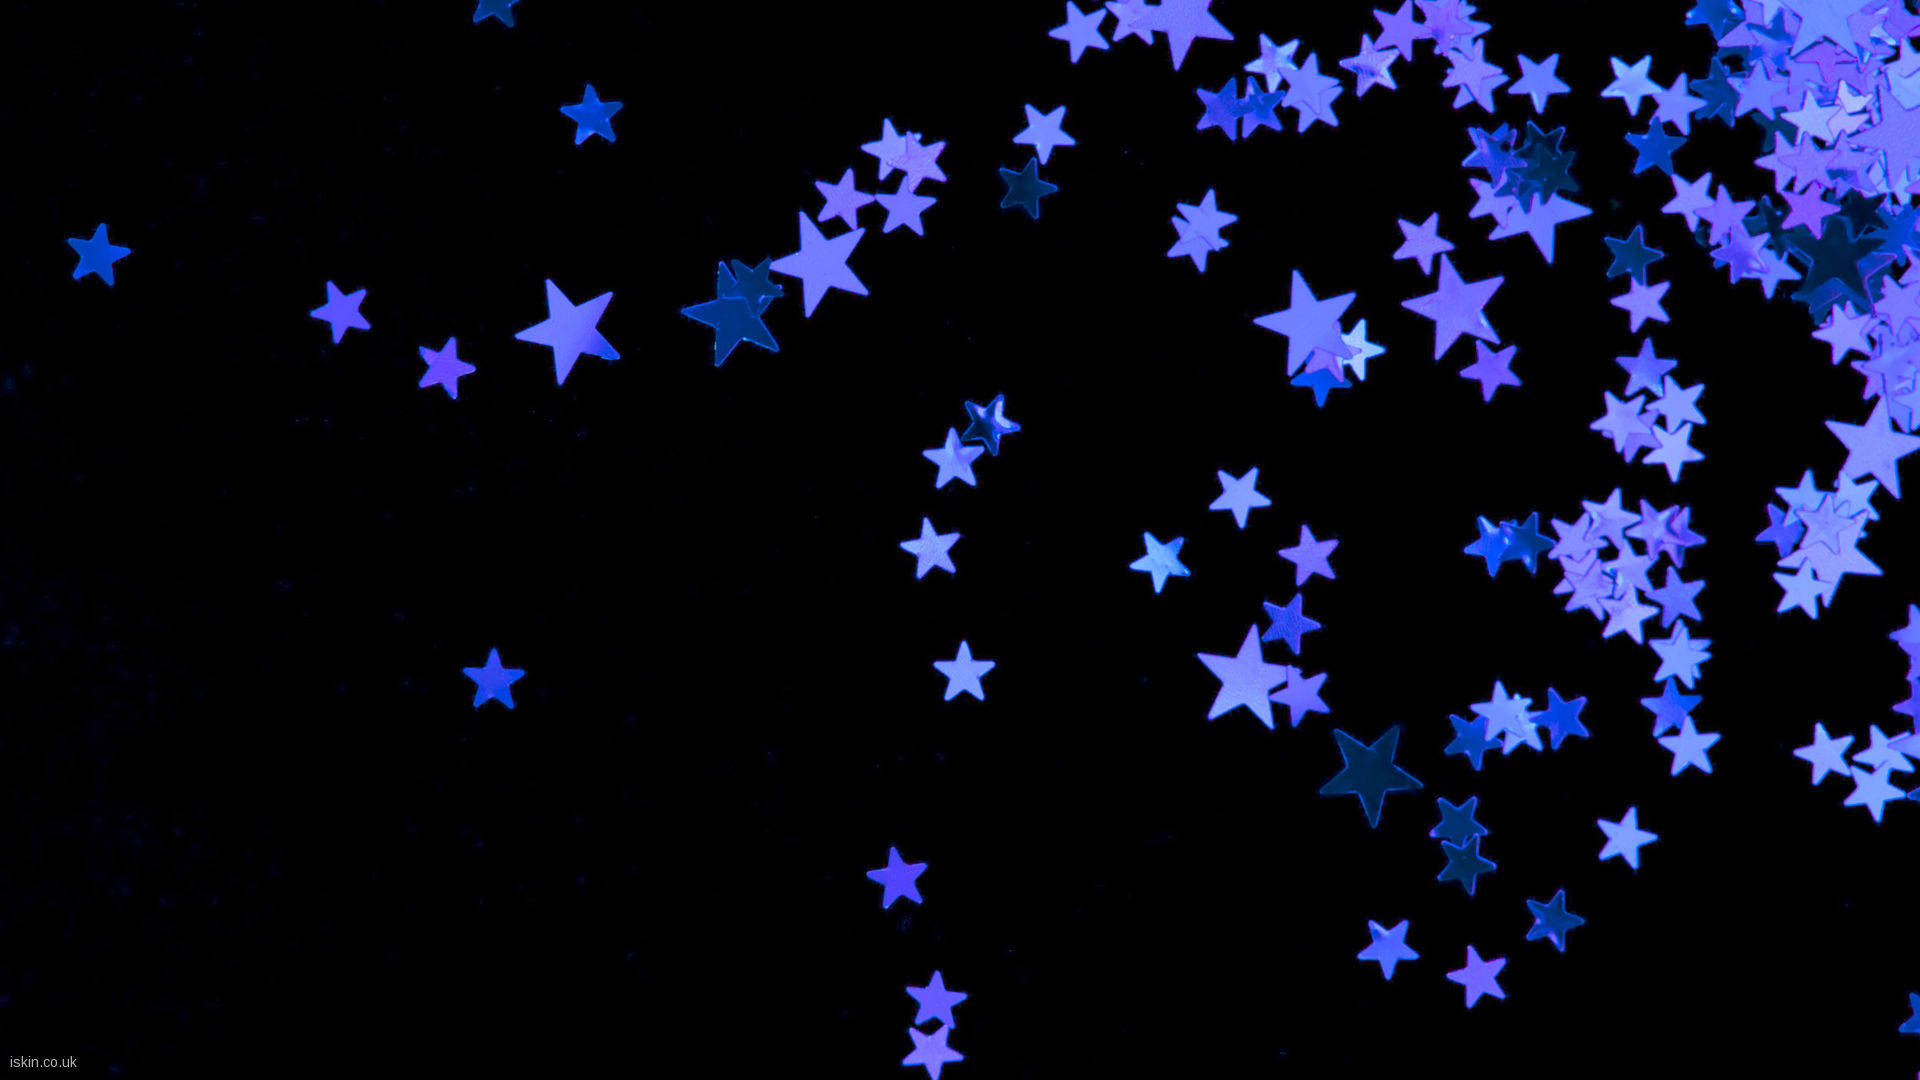 1920x1080 purple stars Desktop Wallpaper | iskin.co.uk